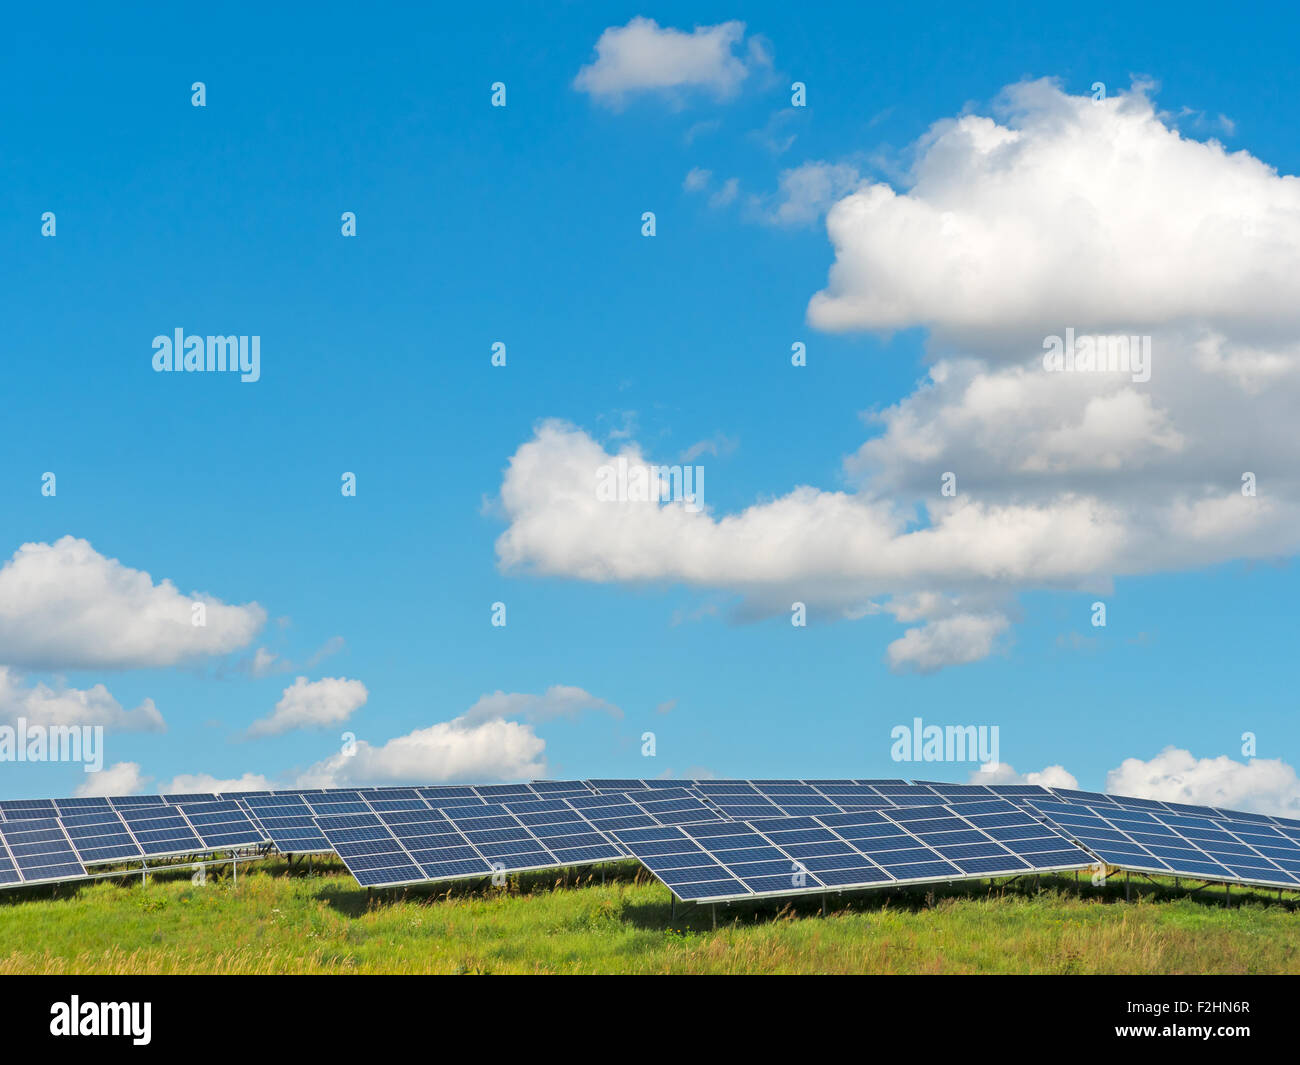 Solarpanele unter blauem Himmel mit Sommerwolken Stock Photo